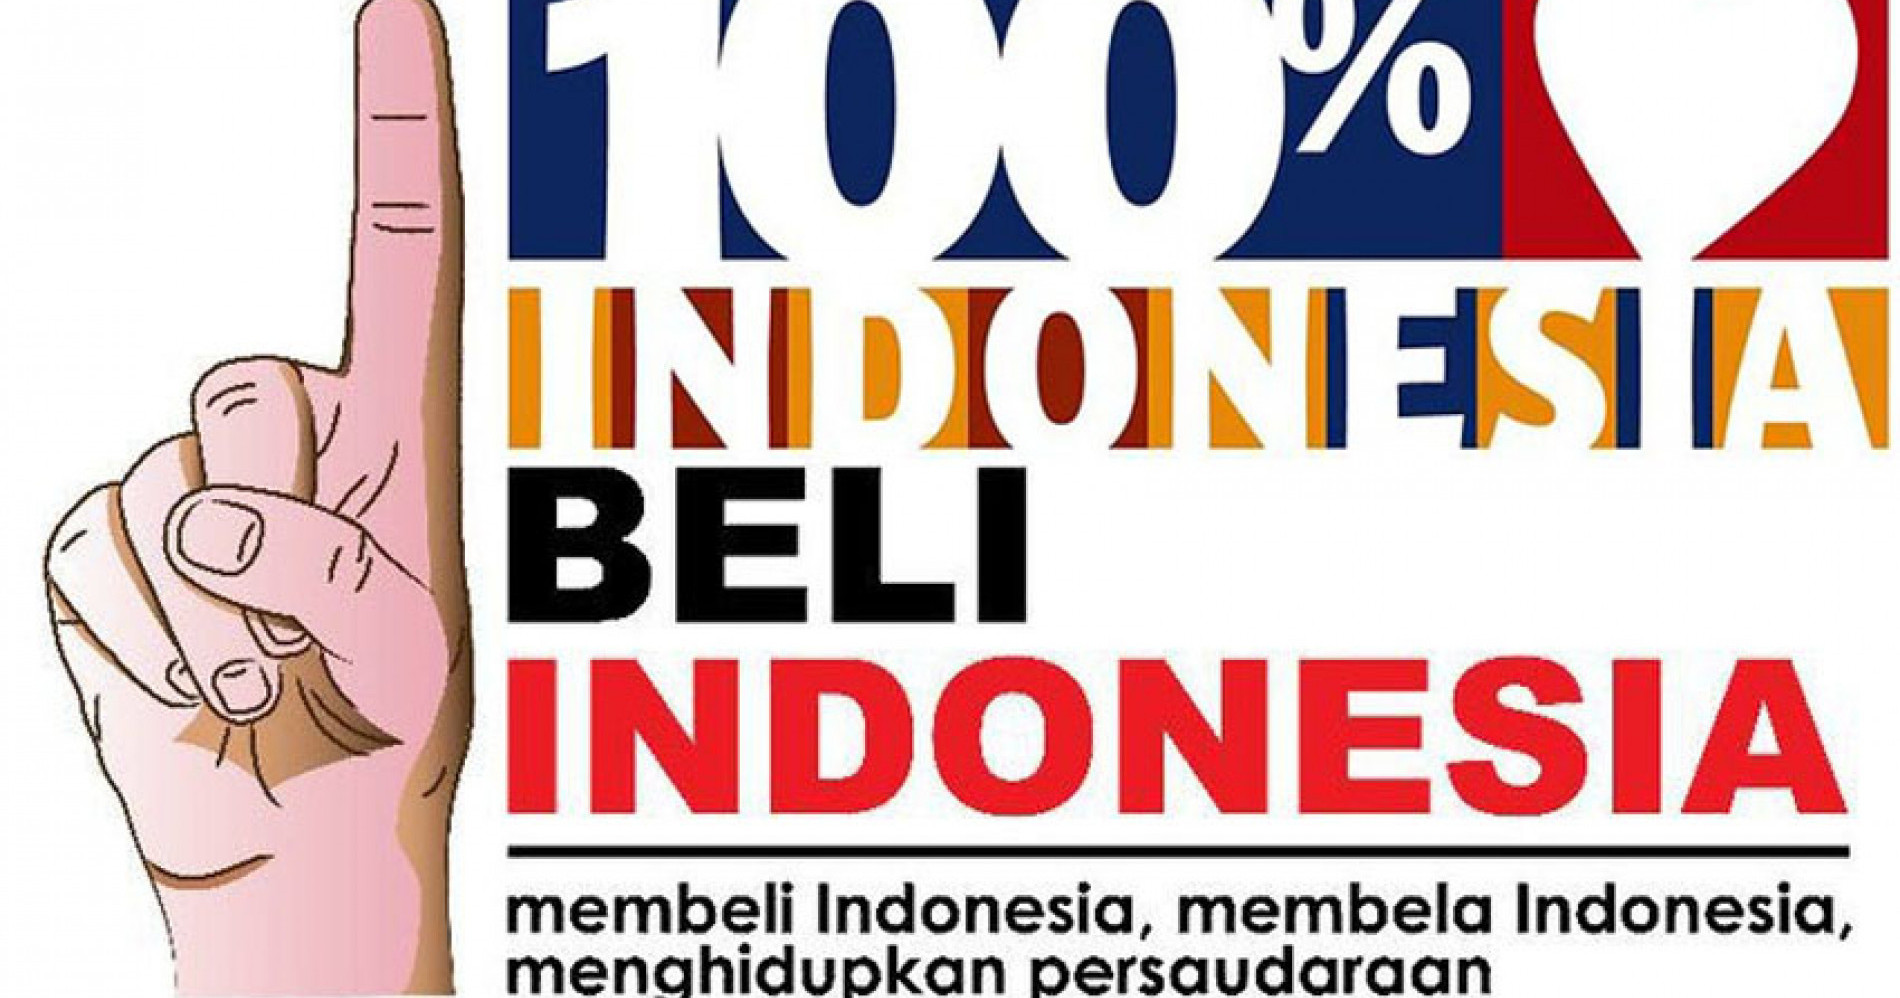 Mengapa kita harus cinta produk indonesia